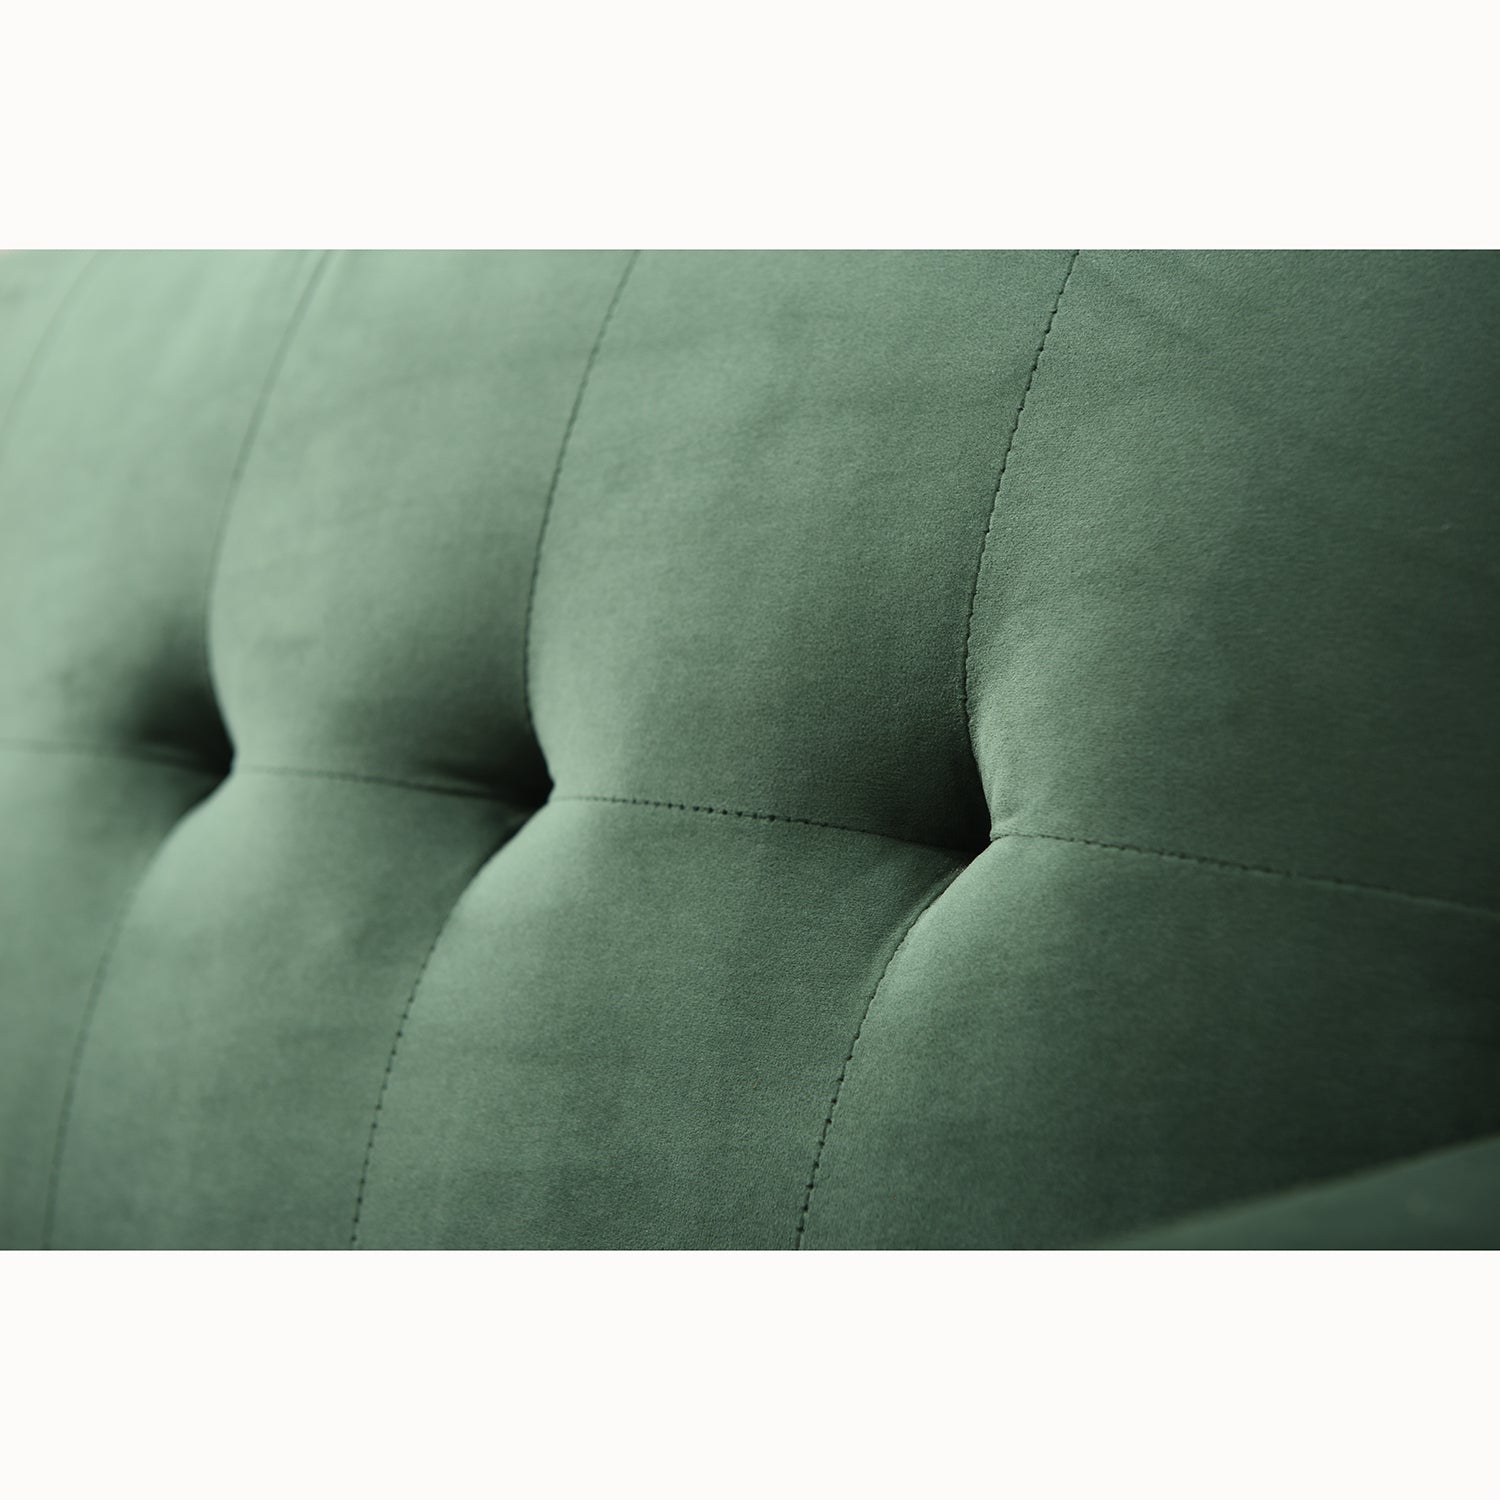 Clarence Sofa Range in Green Velvet